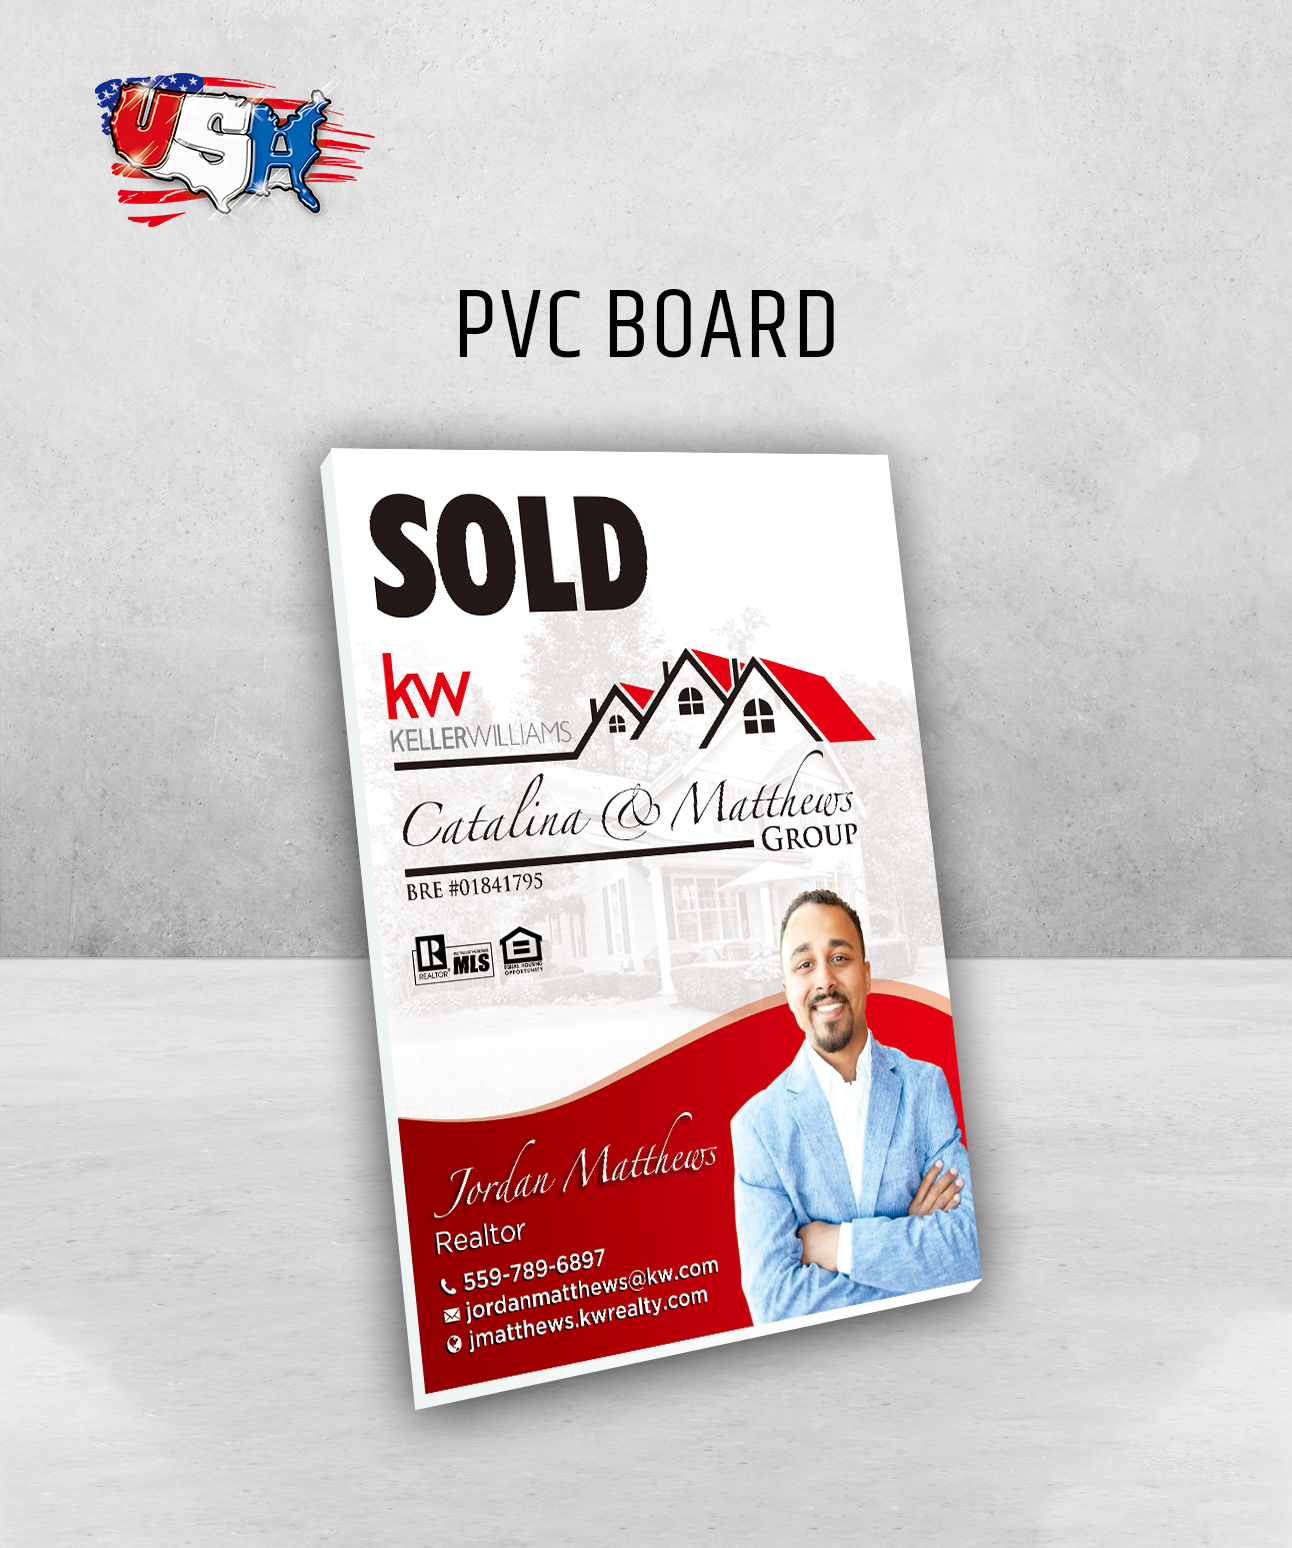 PVC Board